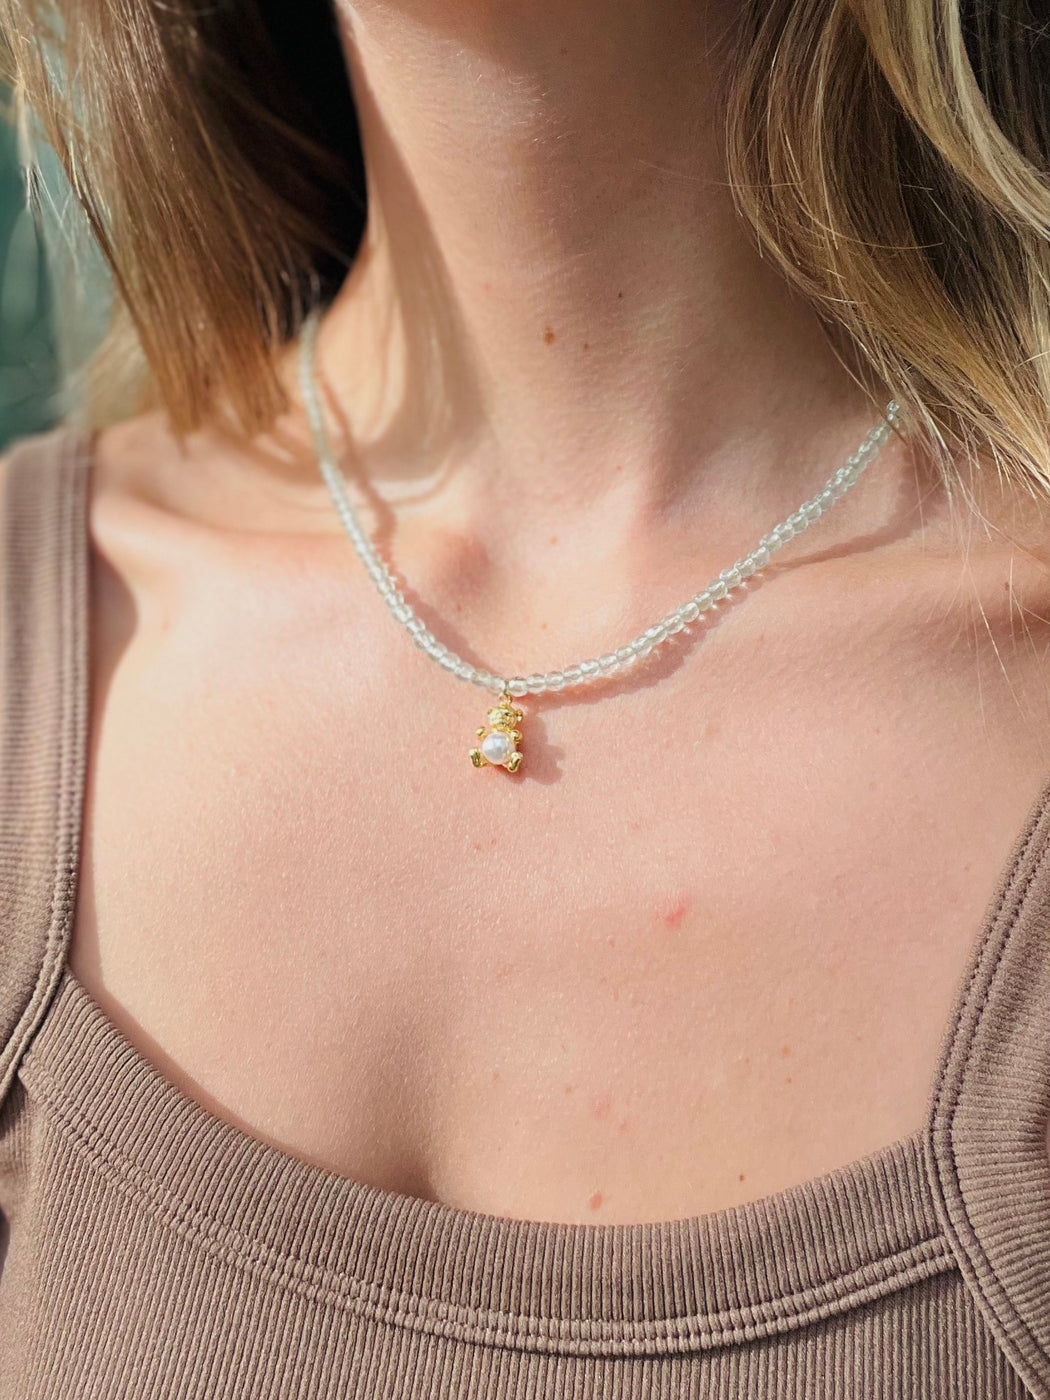 Aquamarine bear necklace - teddy bear fine jewelry